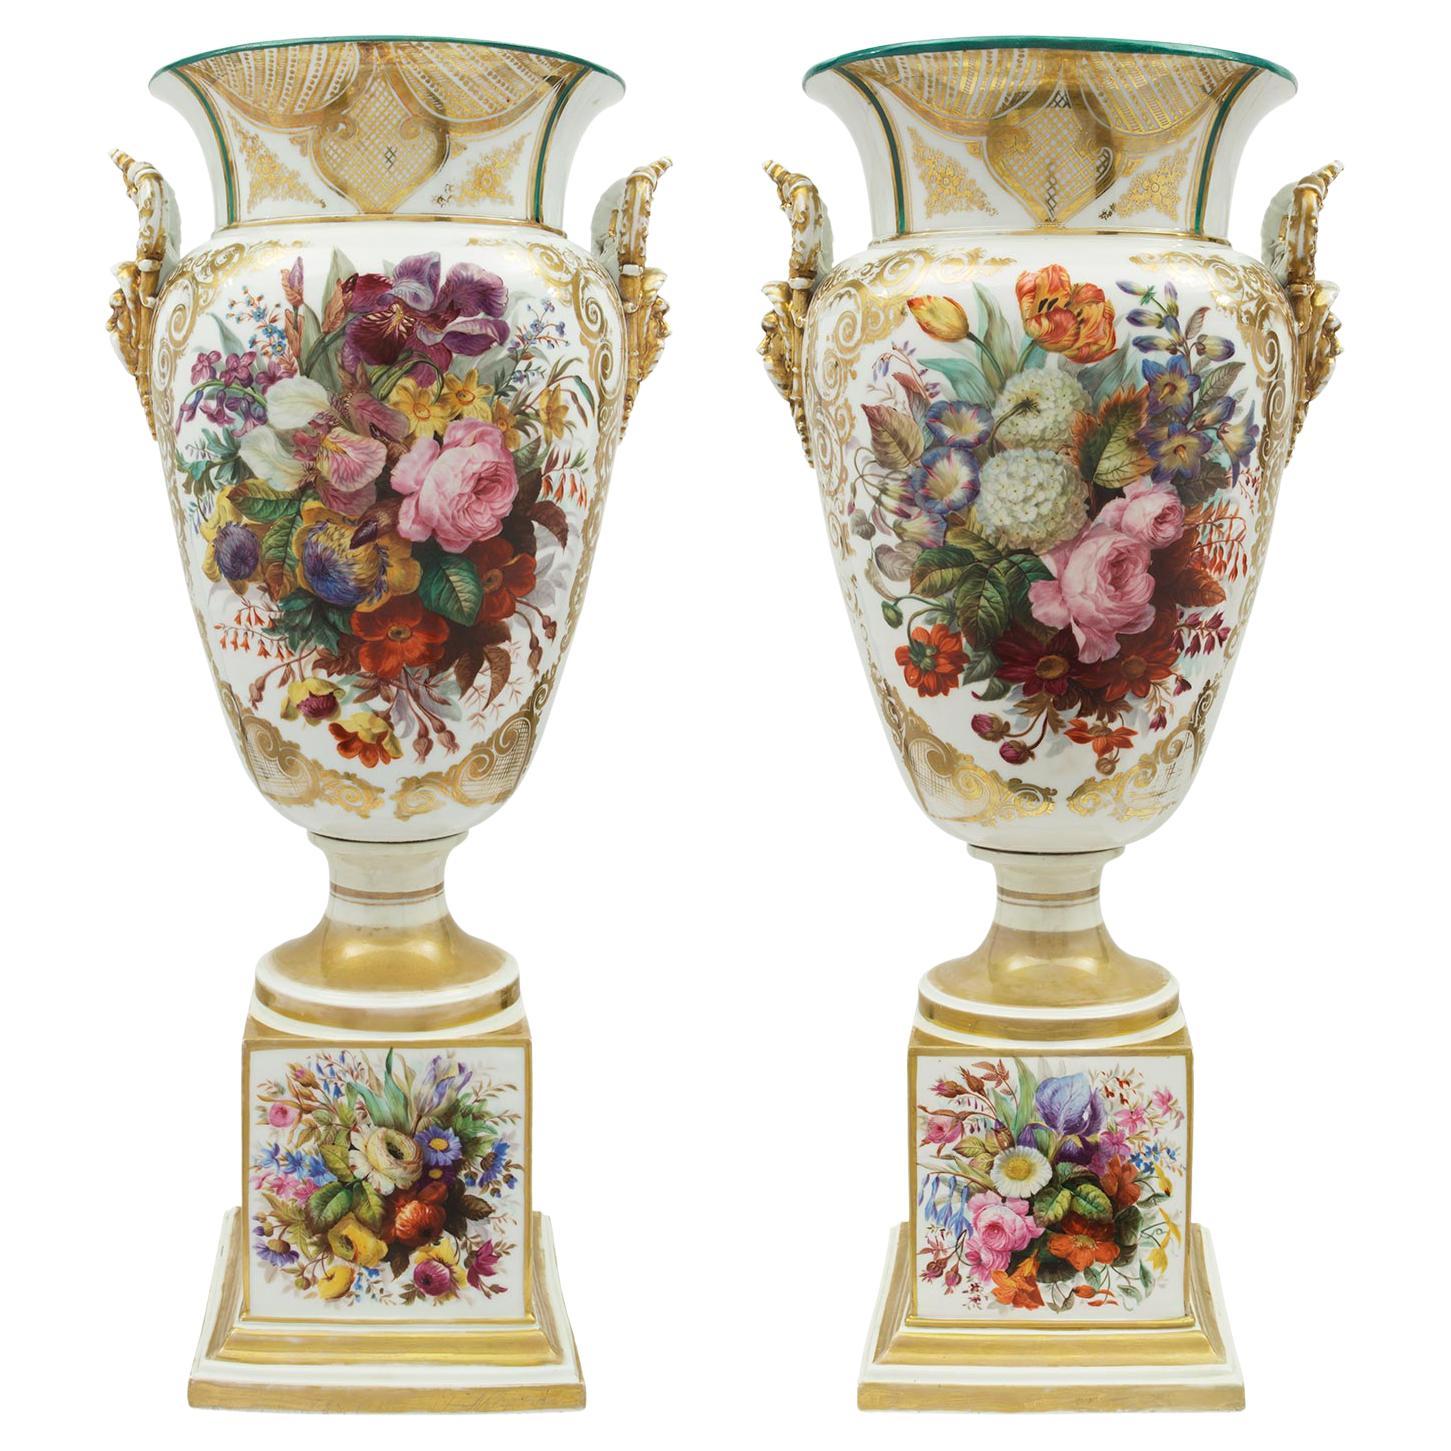 Paire de vases en porcelaine de Sèvres de style Louis XVI du début du XIXe siècle français